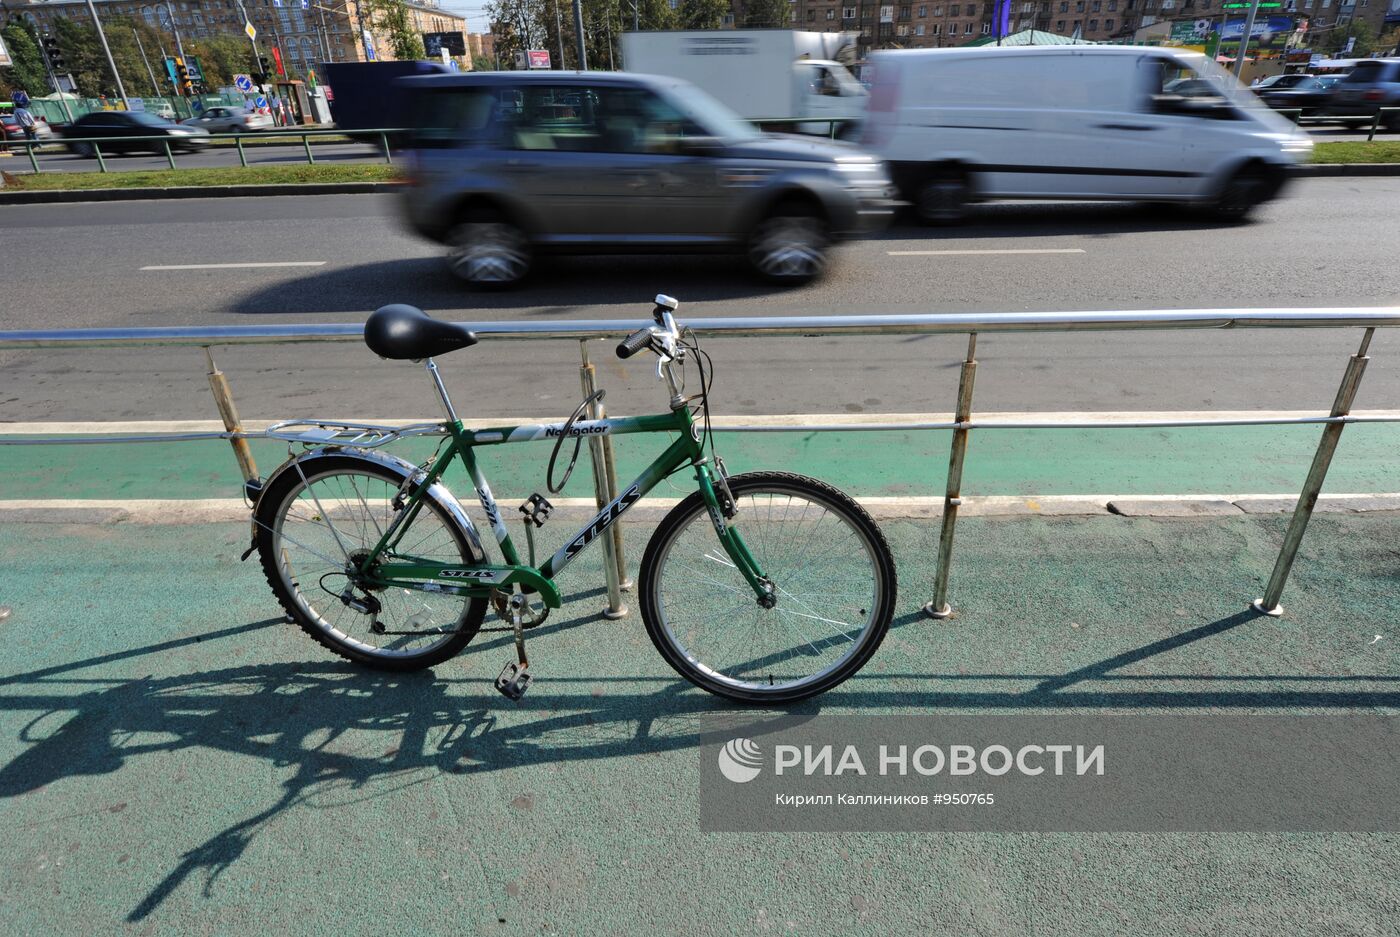 Выделенная полоса для велосипедистов в районе метро Университет